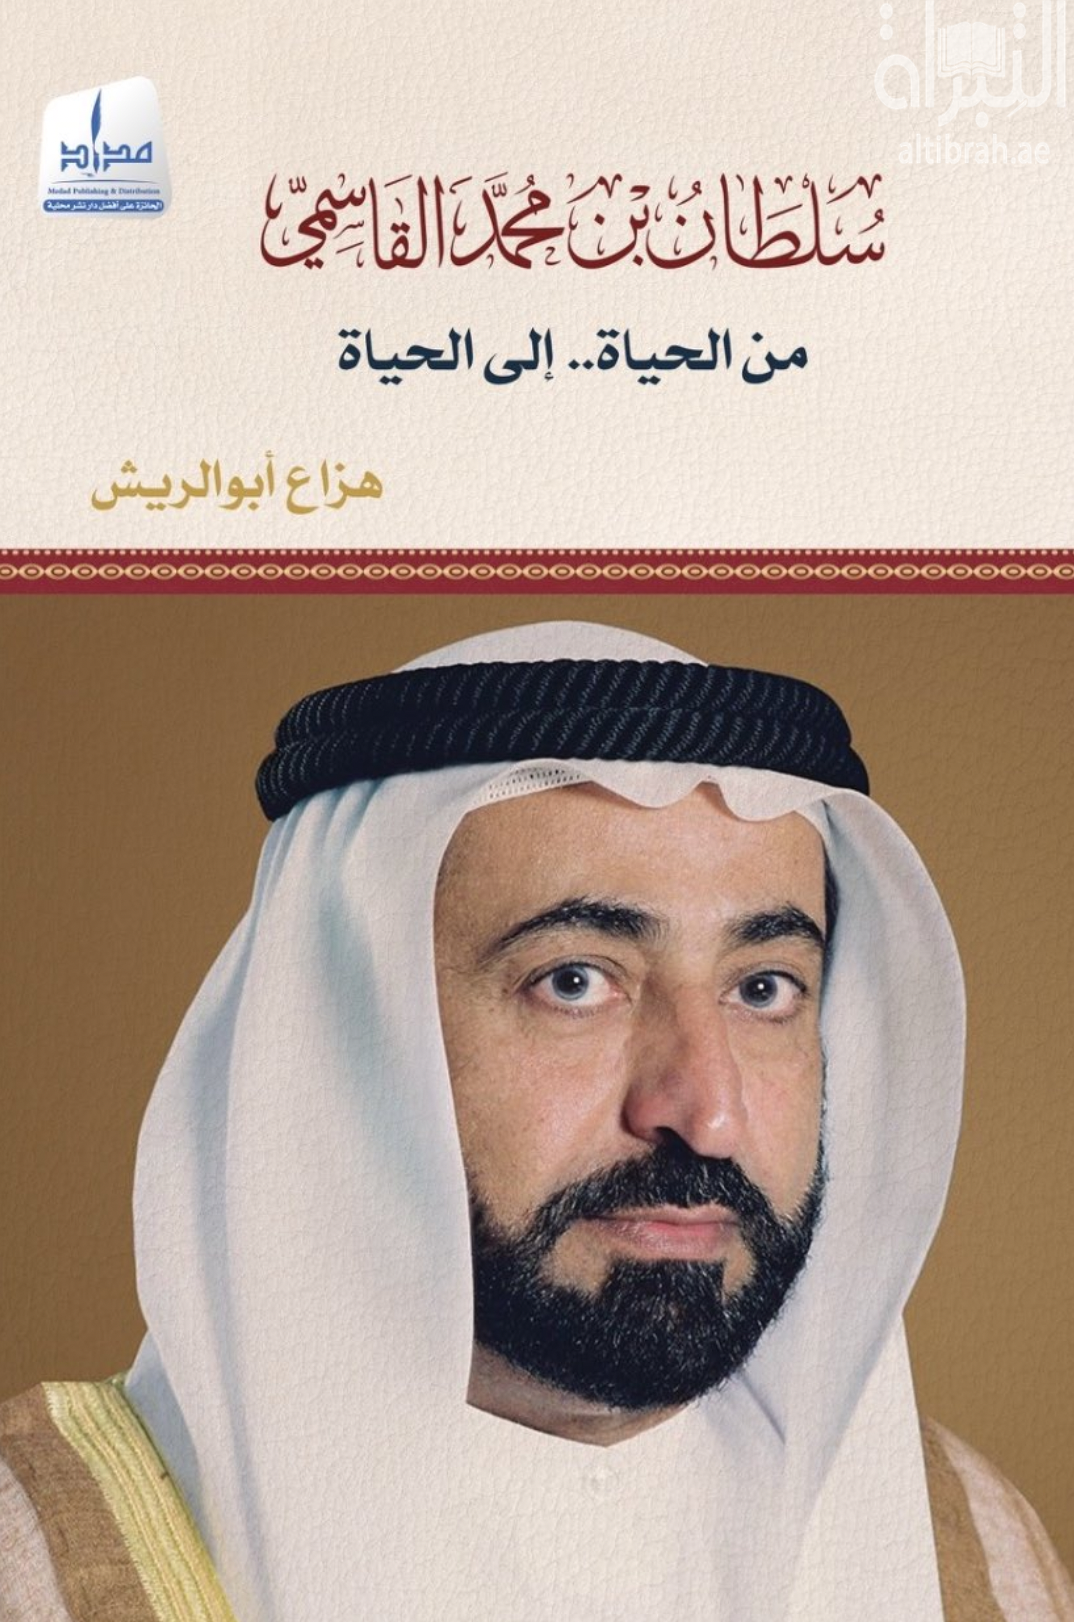 سلطان بن محمد القاسمي : من الحياة .. إلى الحياة